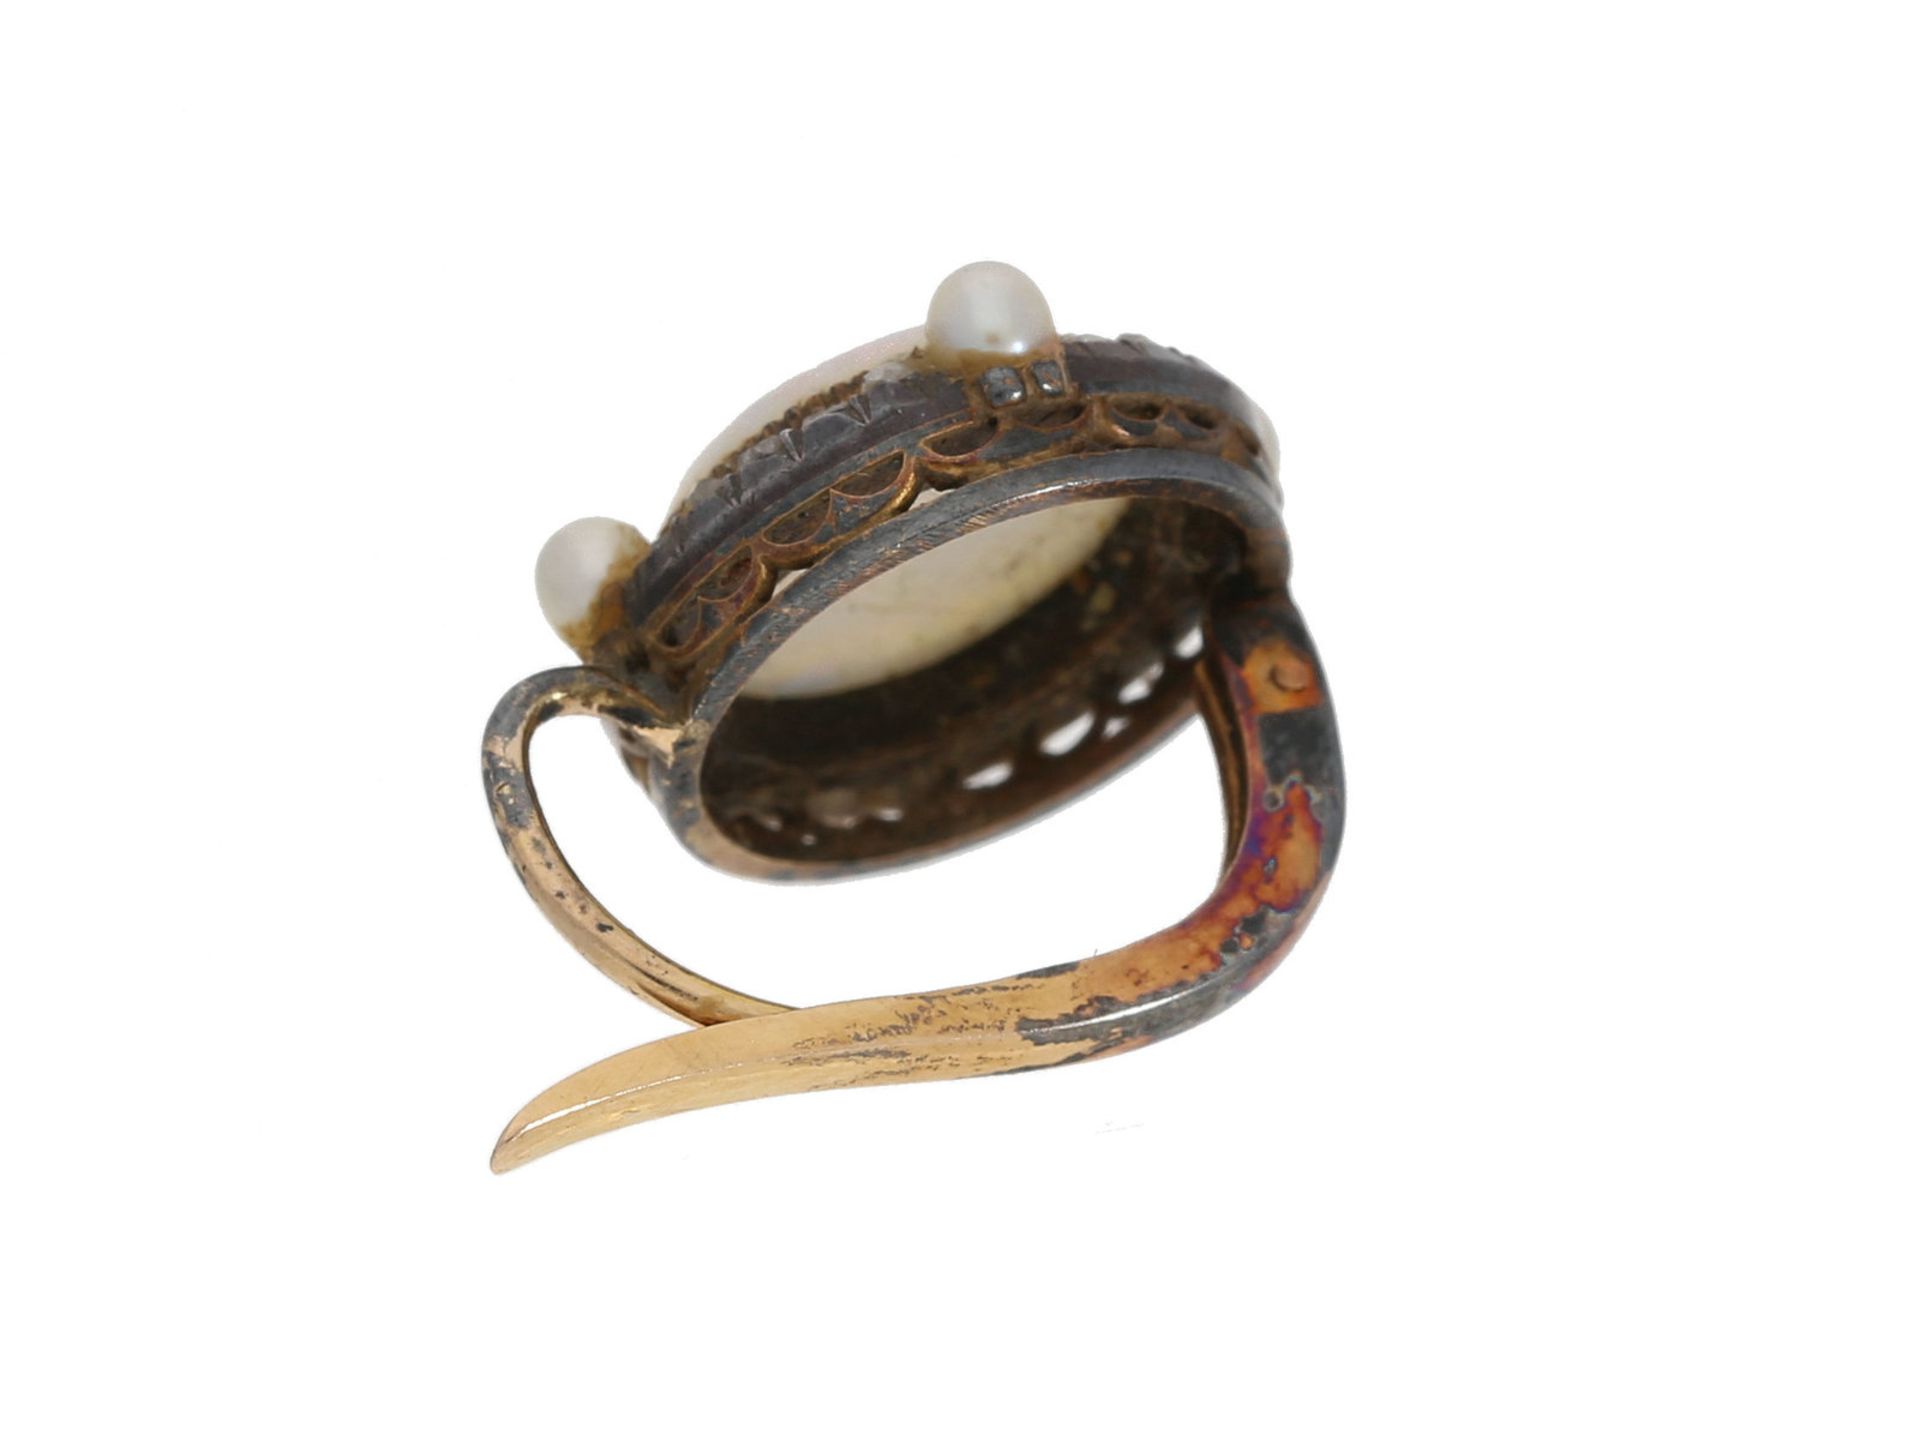 Ohrschmuck: einzelner antiker Ohrschmuck mit Steinkamee, Perlen und Diamantrosen, 19. Jahrhunder - Bild 2 aus 2